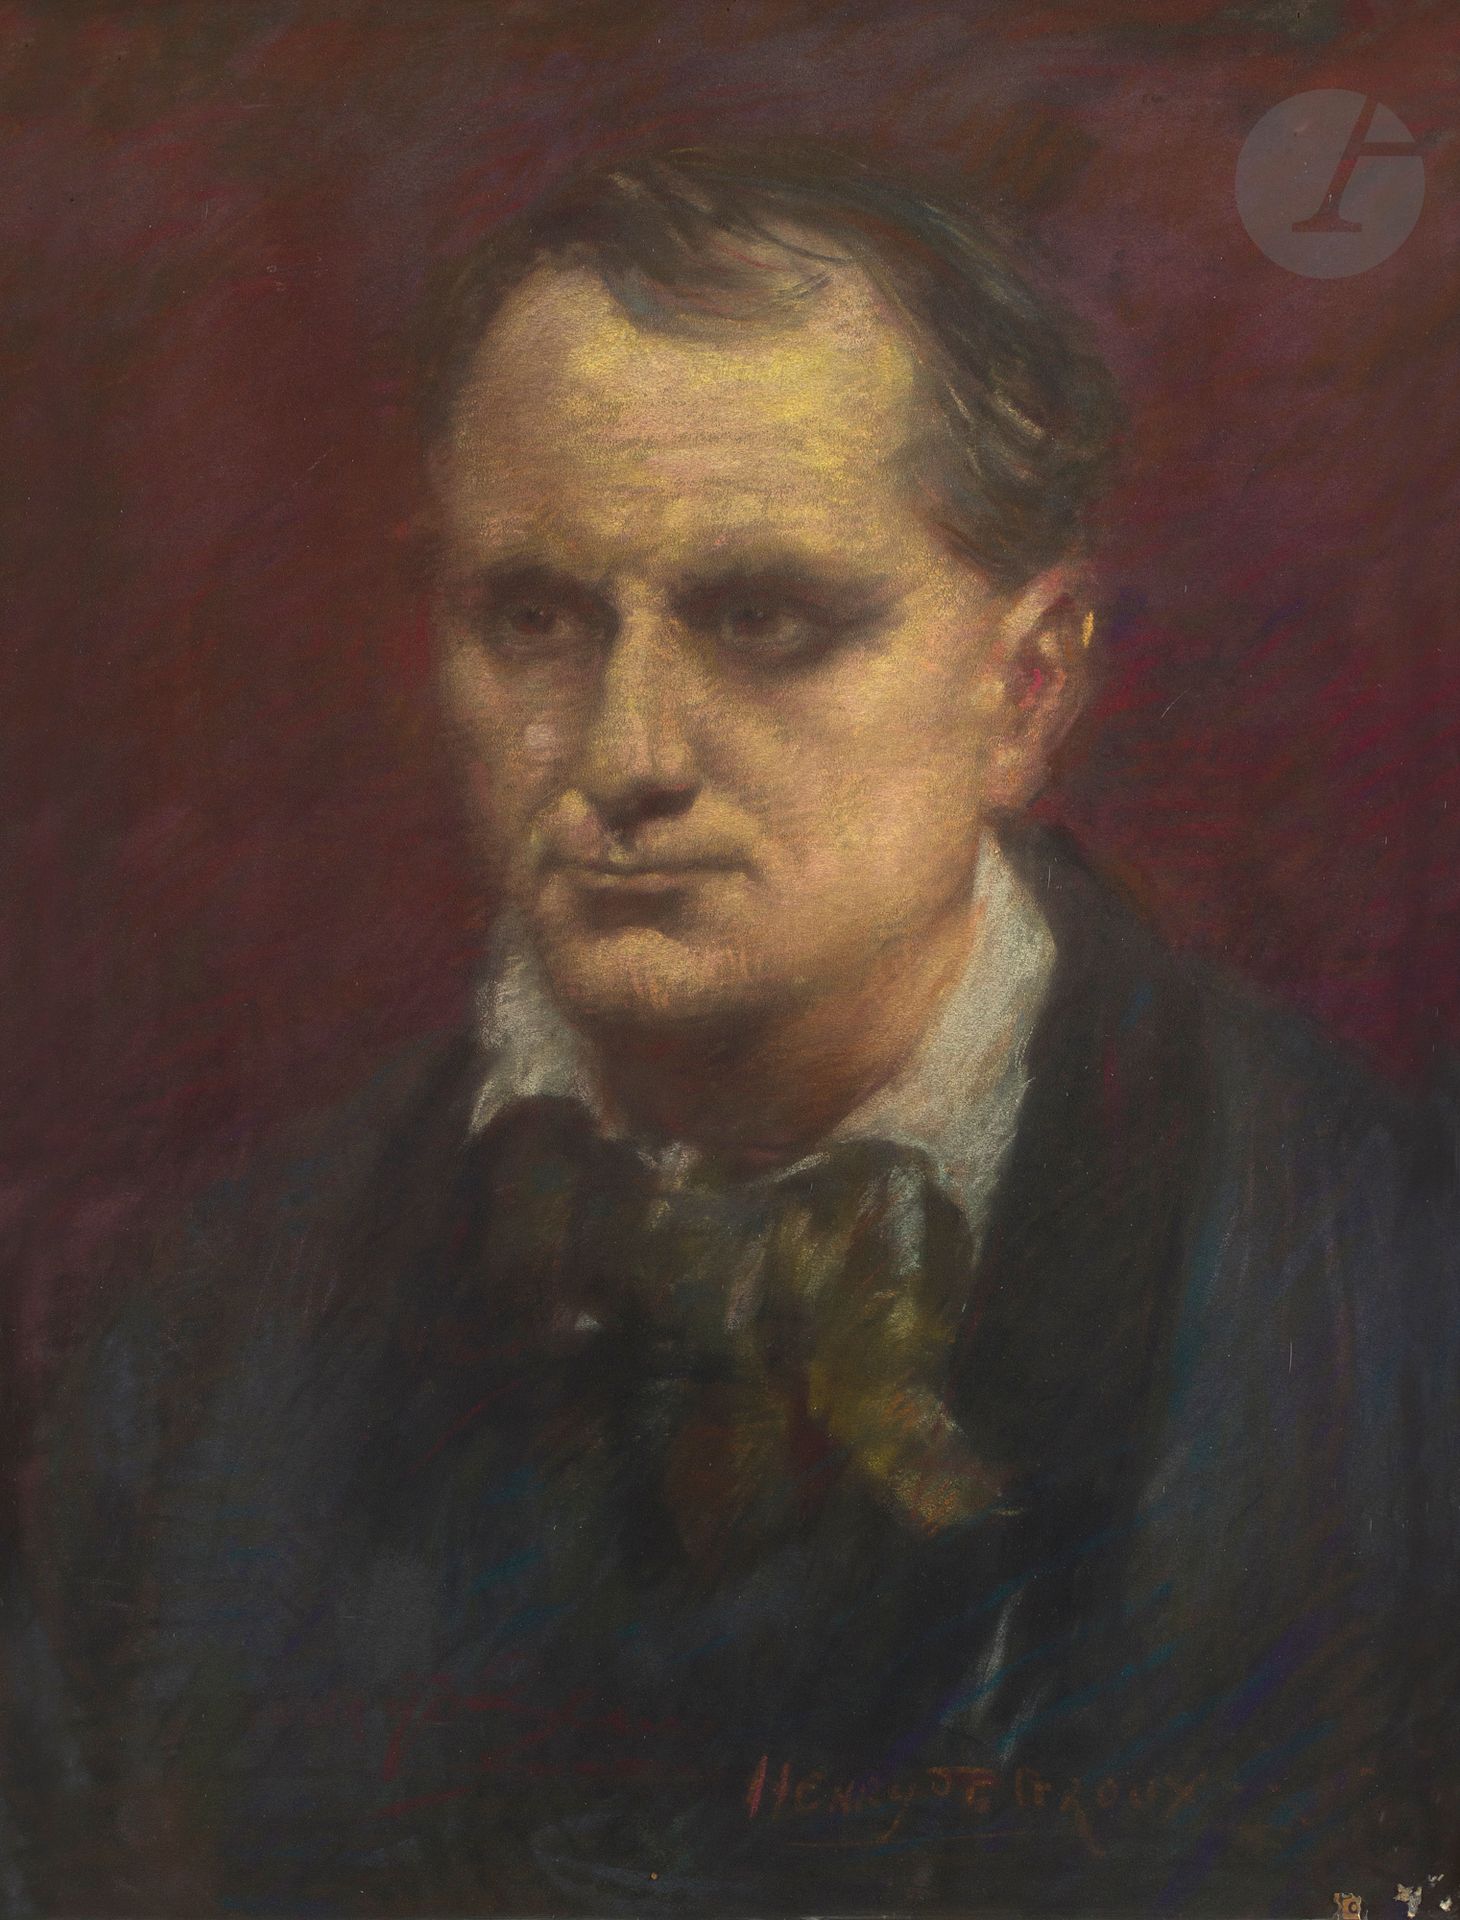 Null 亨利-德-格劳克斯 (1866-1930)
夏尔-波德莱尔的画像
粉彩画。
右下方有签名。
65 x 50厘米